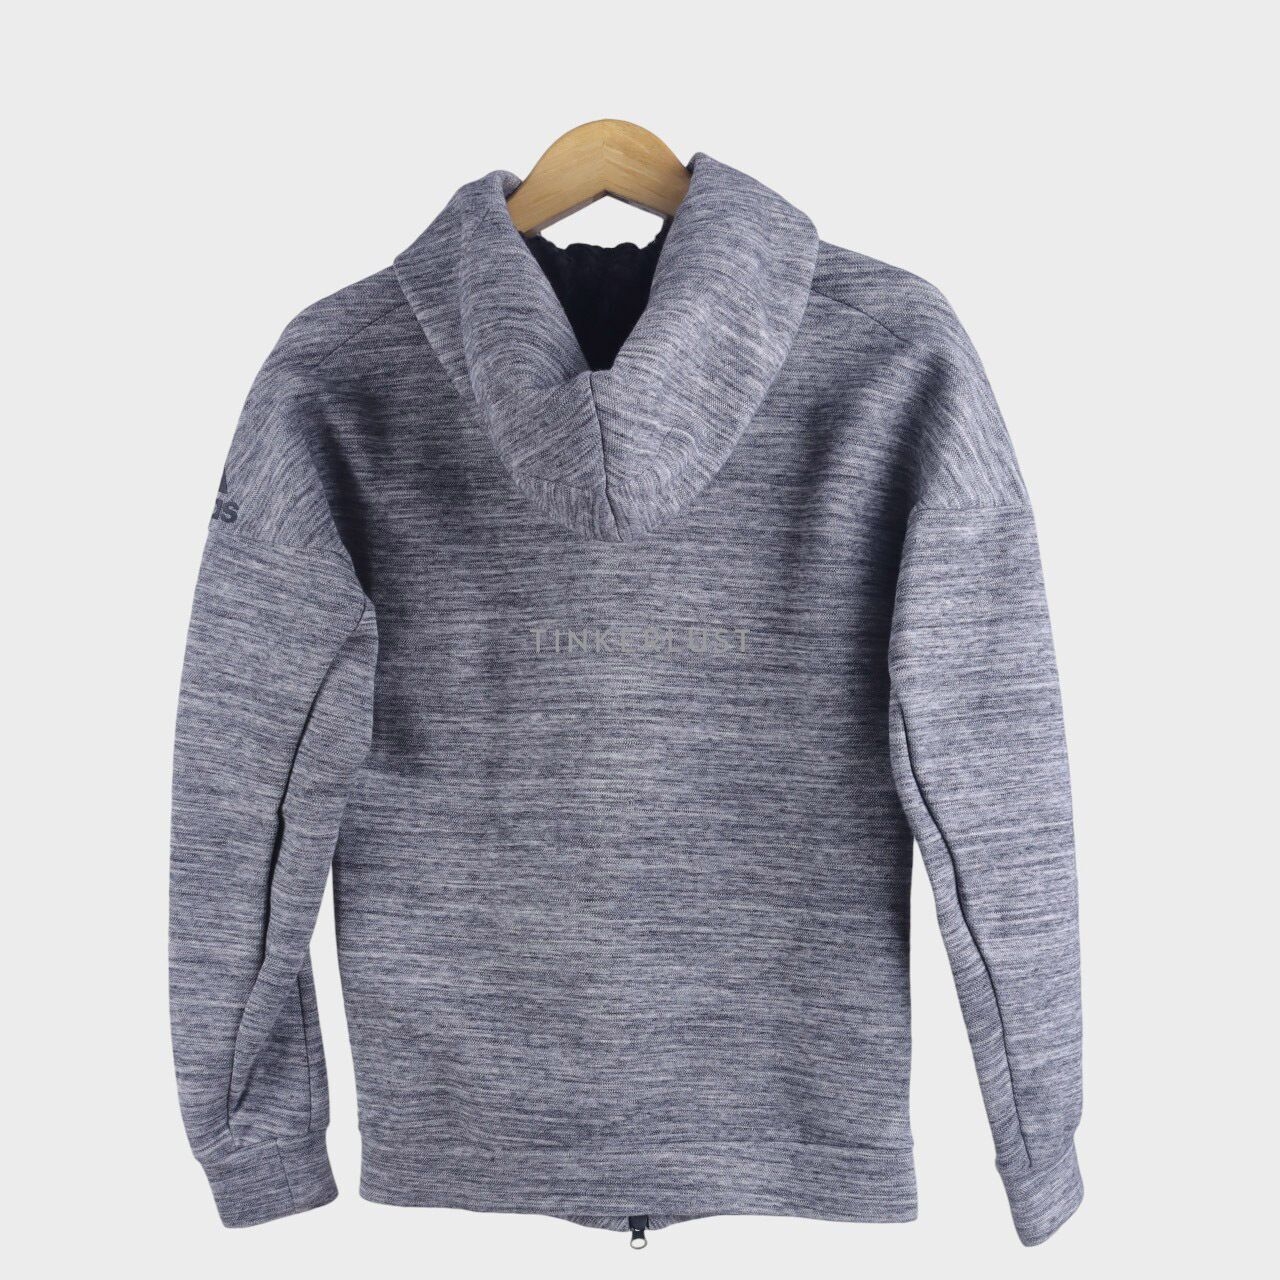 Adidas Grey Hoodie Jacket